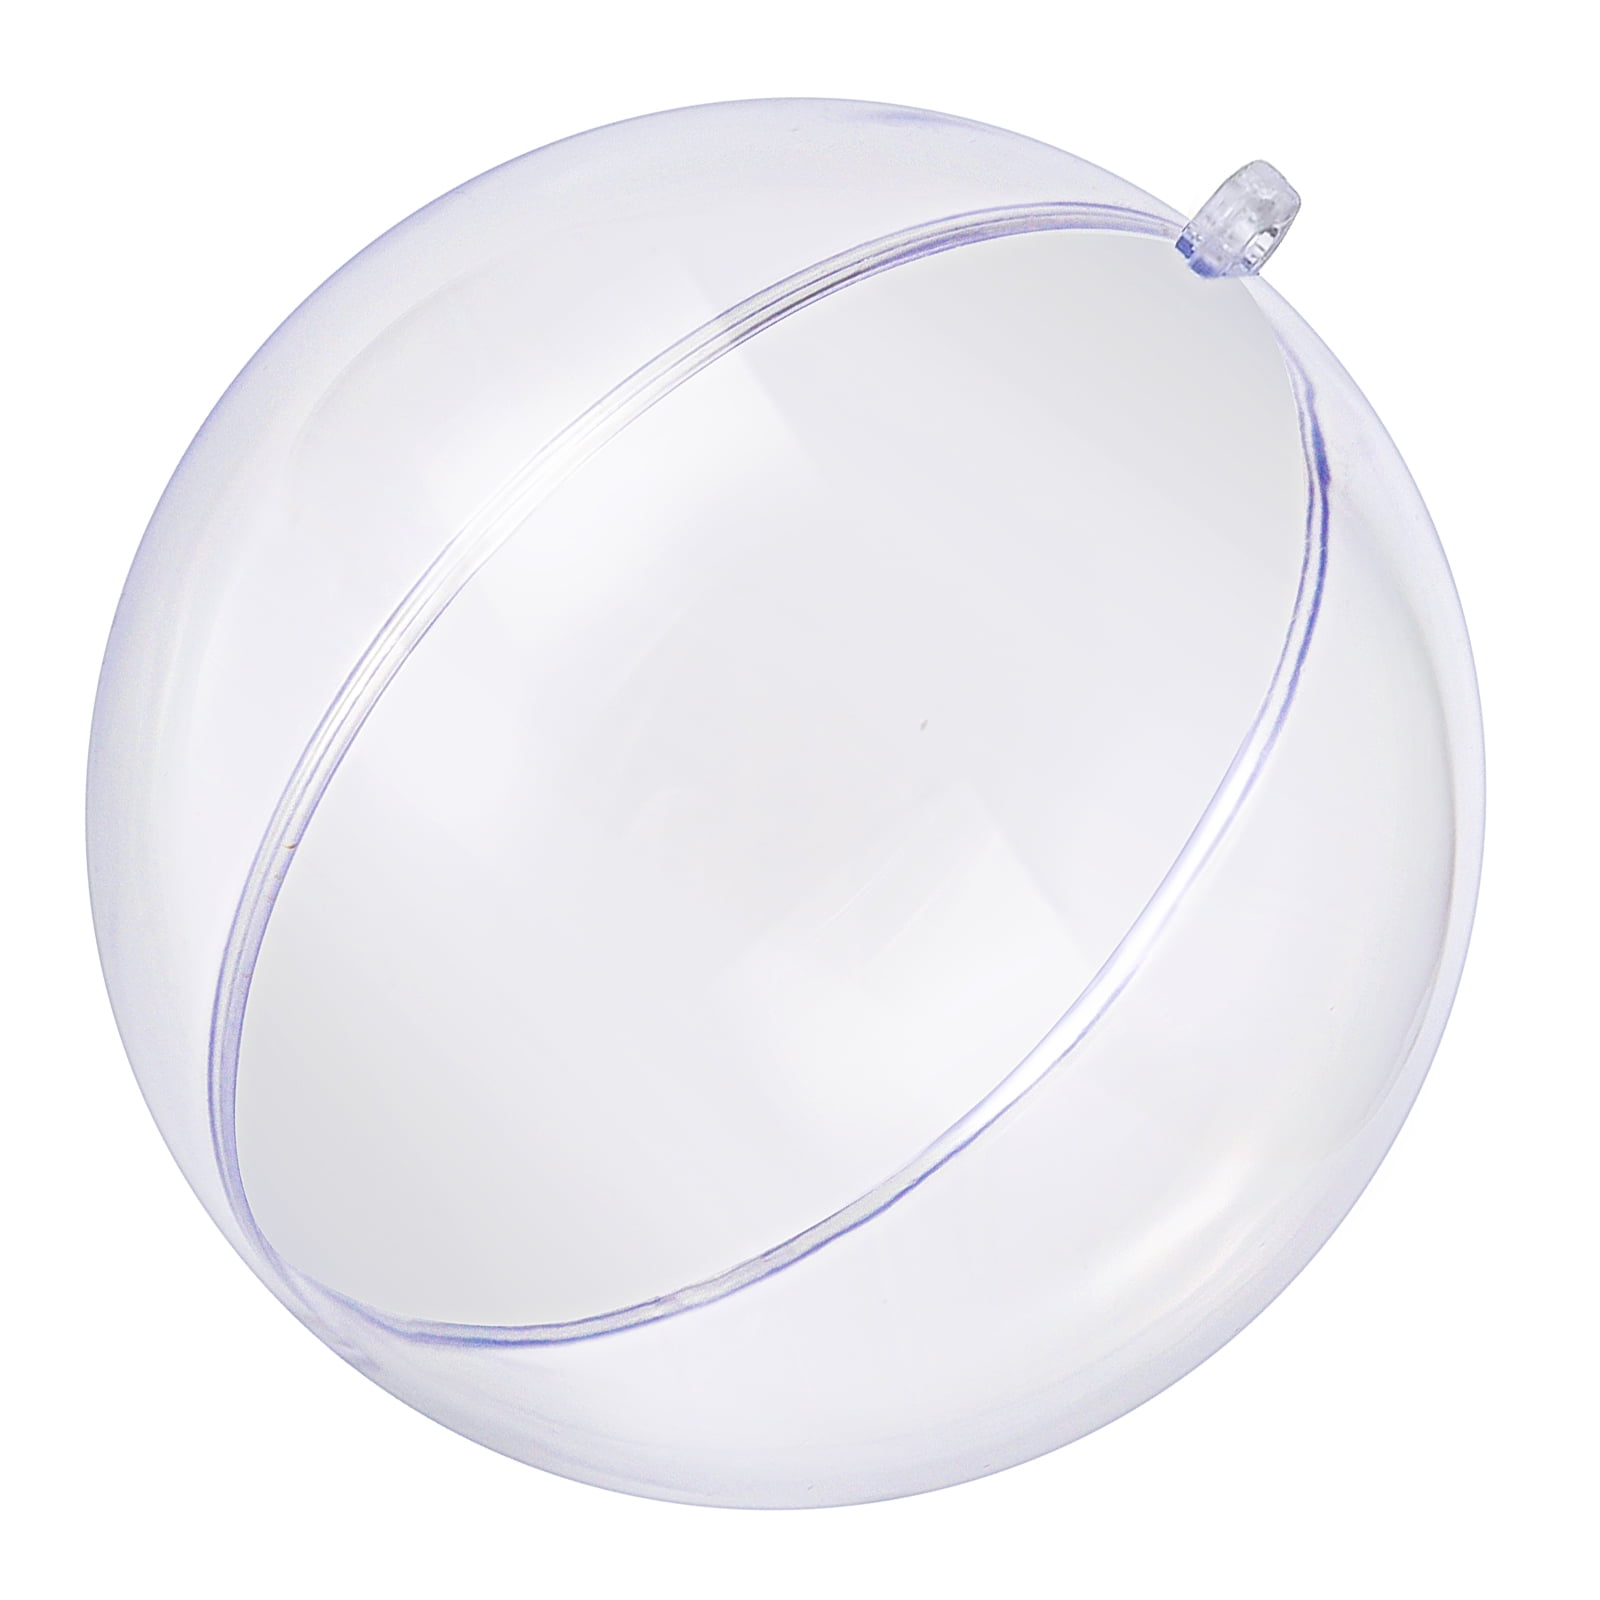 ZOENHOU 40 PCS 10cm Clear Plastic Ornaments Ball, DIY Clear Plastic Hanging Balls